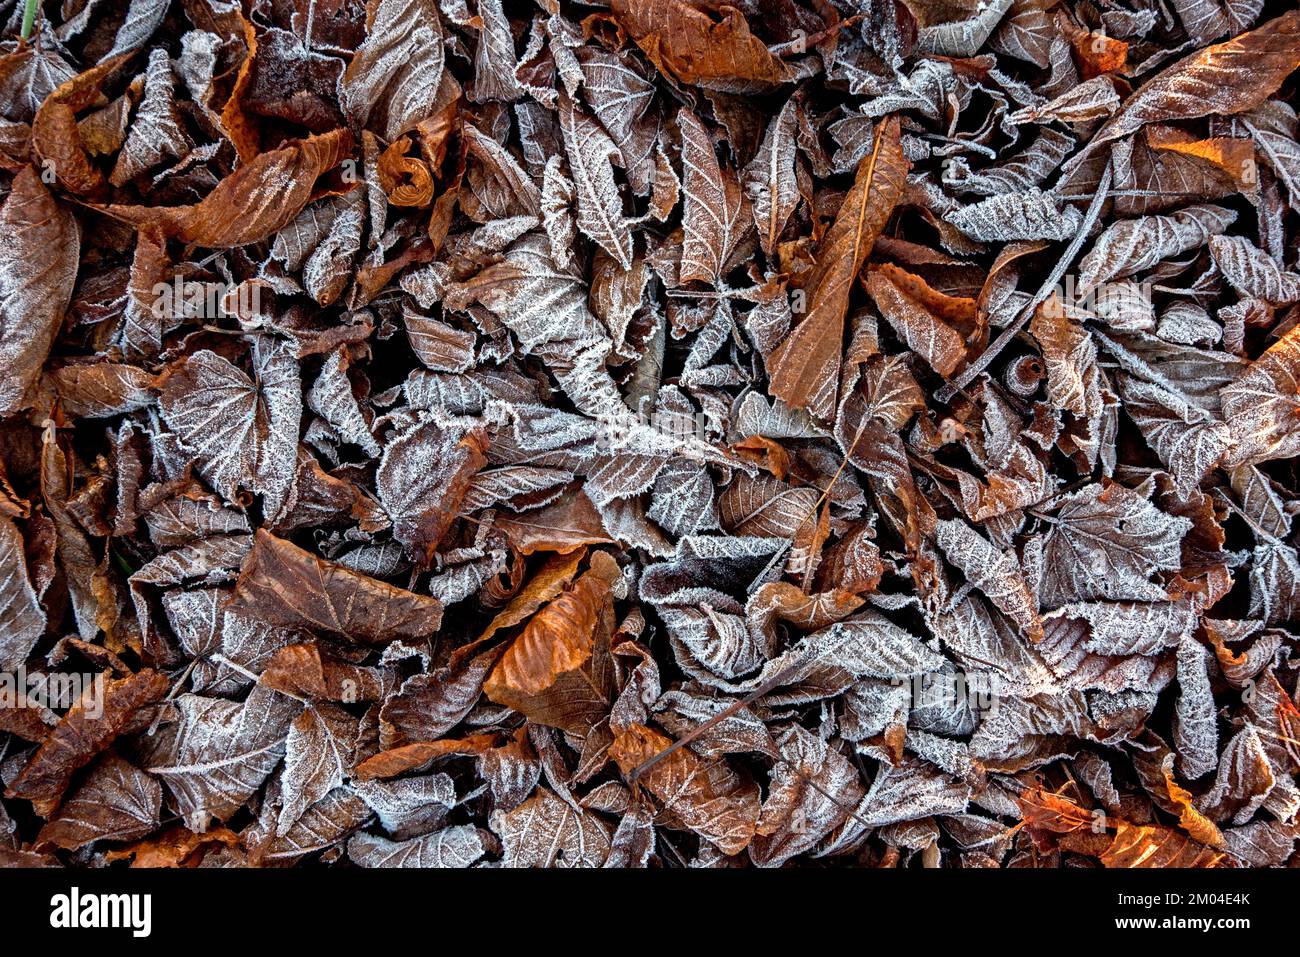 Frost on fallen autumn leaves. Stock Photo